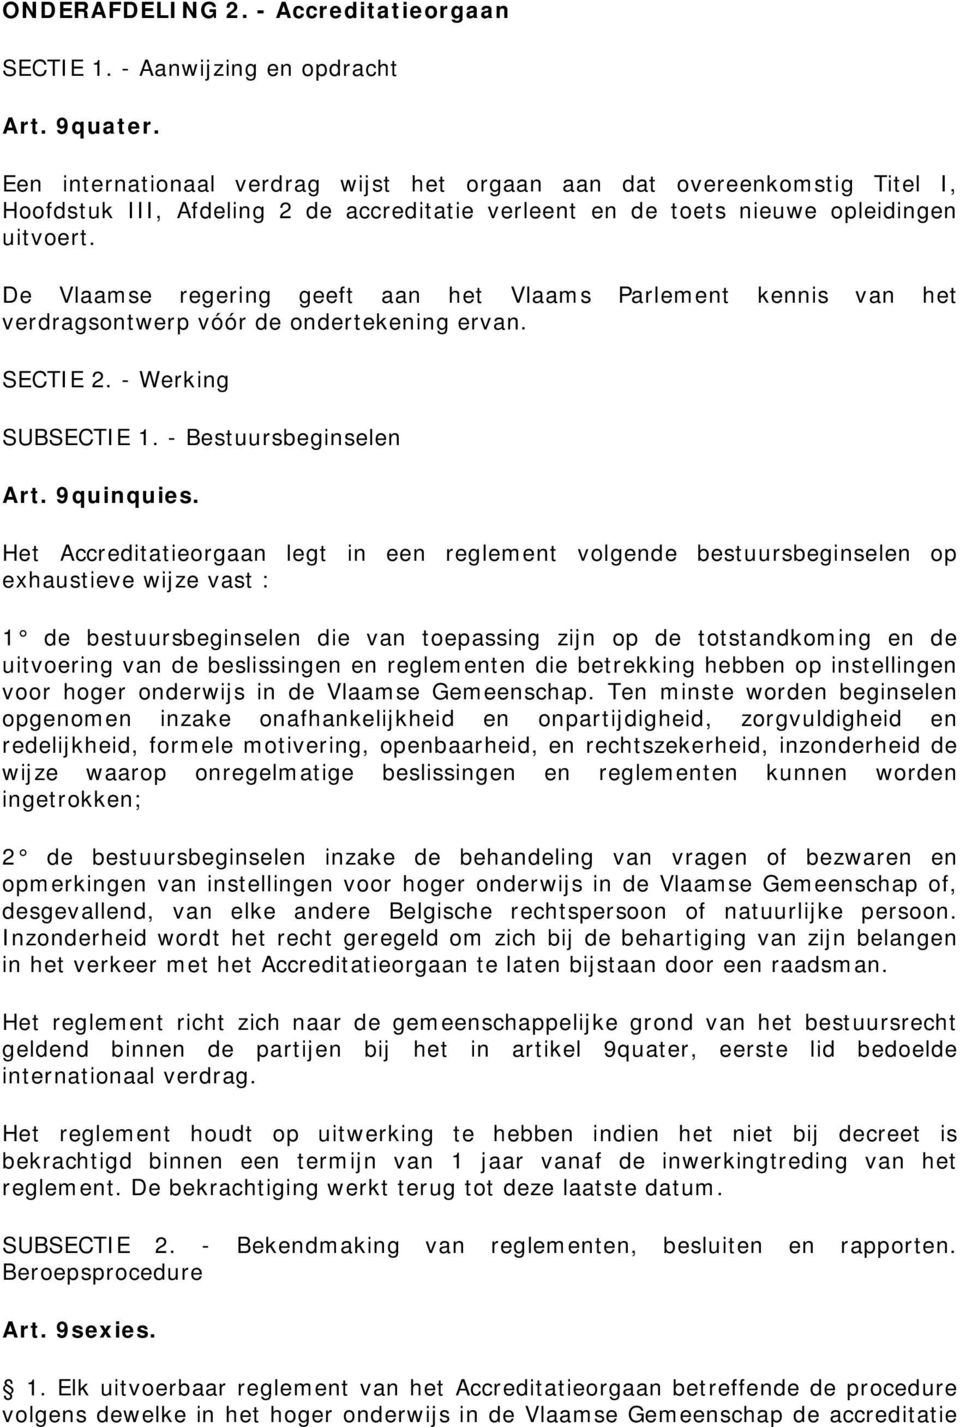 De Vlaamse regering geeft aan het Vlaams Parlement kennis van het verdragsontwerp vóór de ondertekening ervan. SECTIE 2. - Werking SUBSECTIE 1. - Bestuursbeginselen Art. 9quinquies.